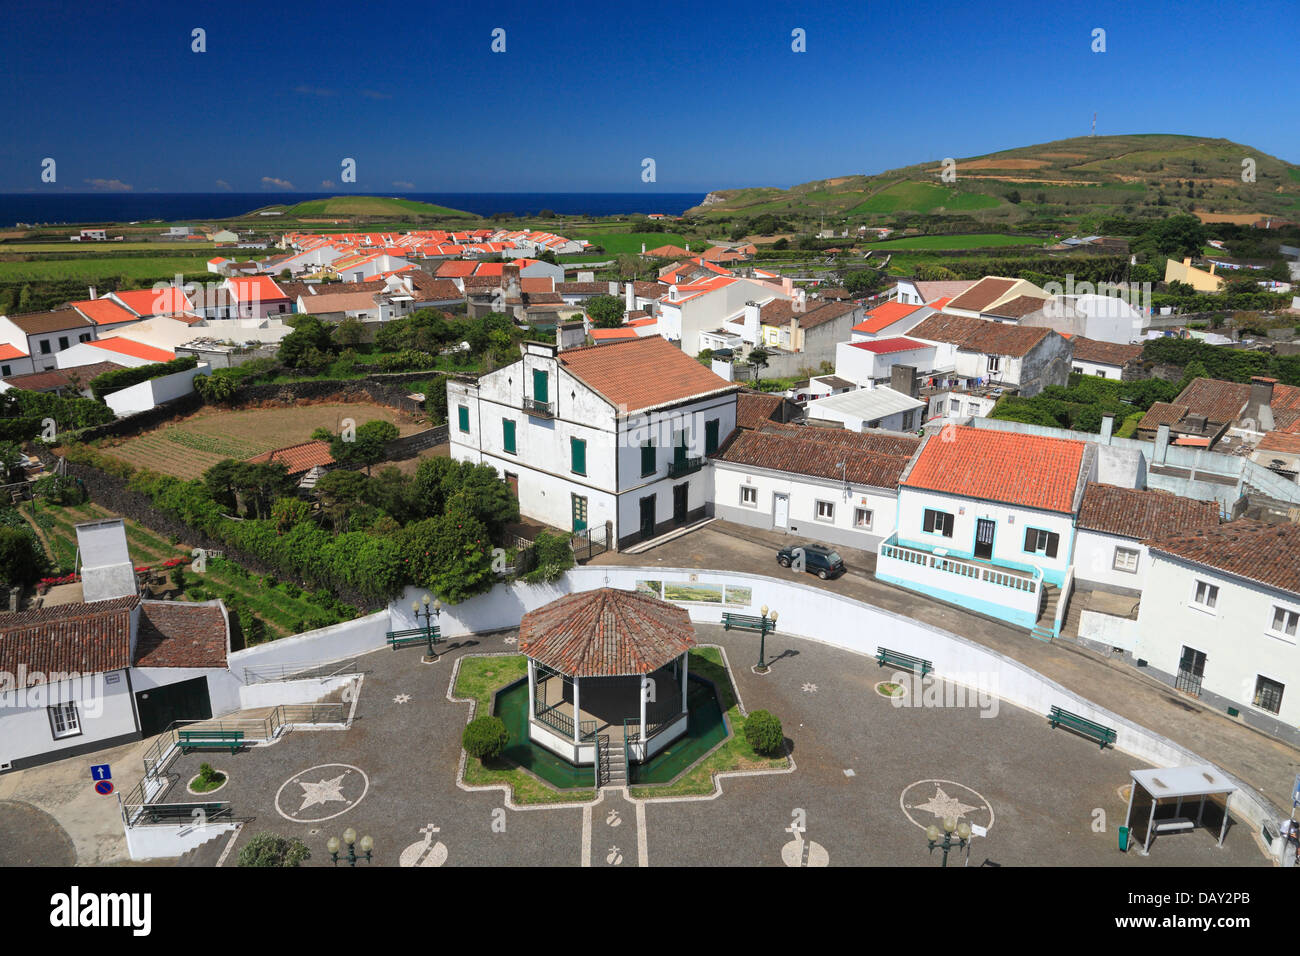 La parroquia de Ribeirinha, visto desde lo alto de la torre de la iglesia. Isla de Sao Miguel, Azores, Portugal. Foto de stock